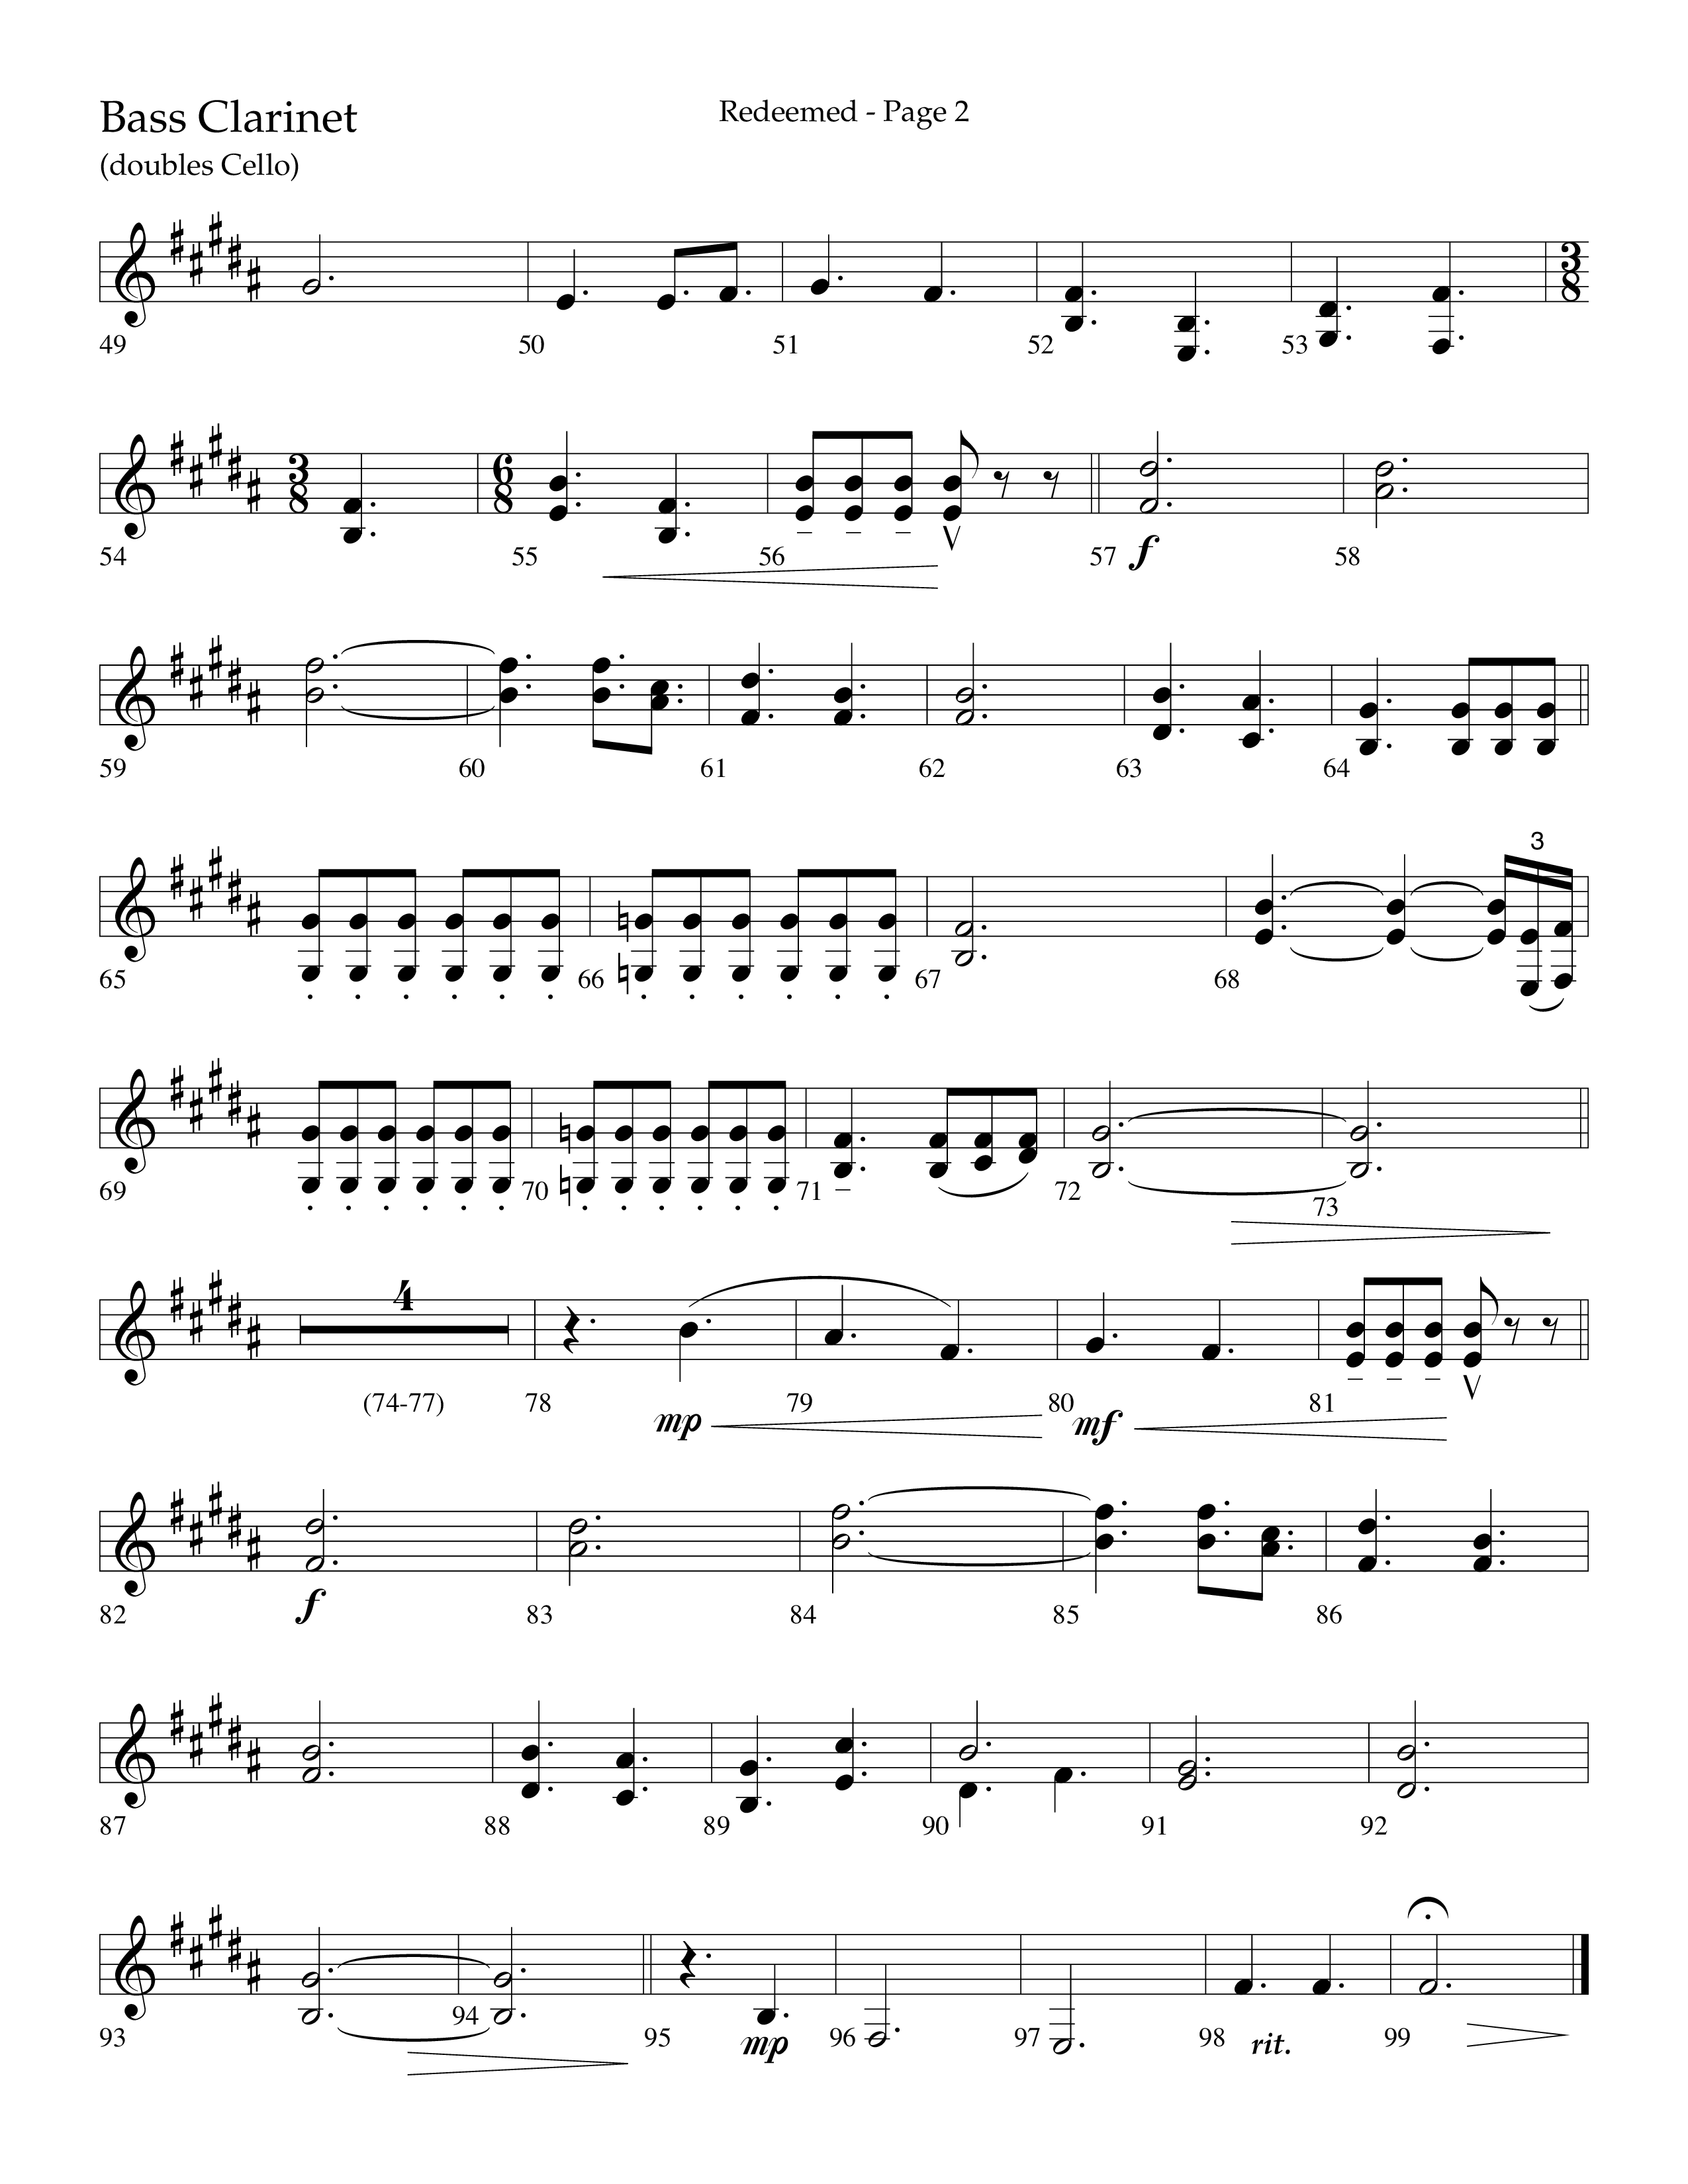 Redeemed (Choral Anthem SATB) Bass Clarinet (Lifeway Choral / Arr. Danny Zaloudik)